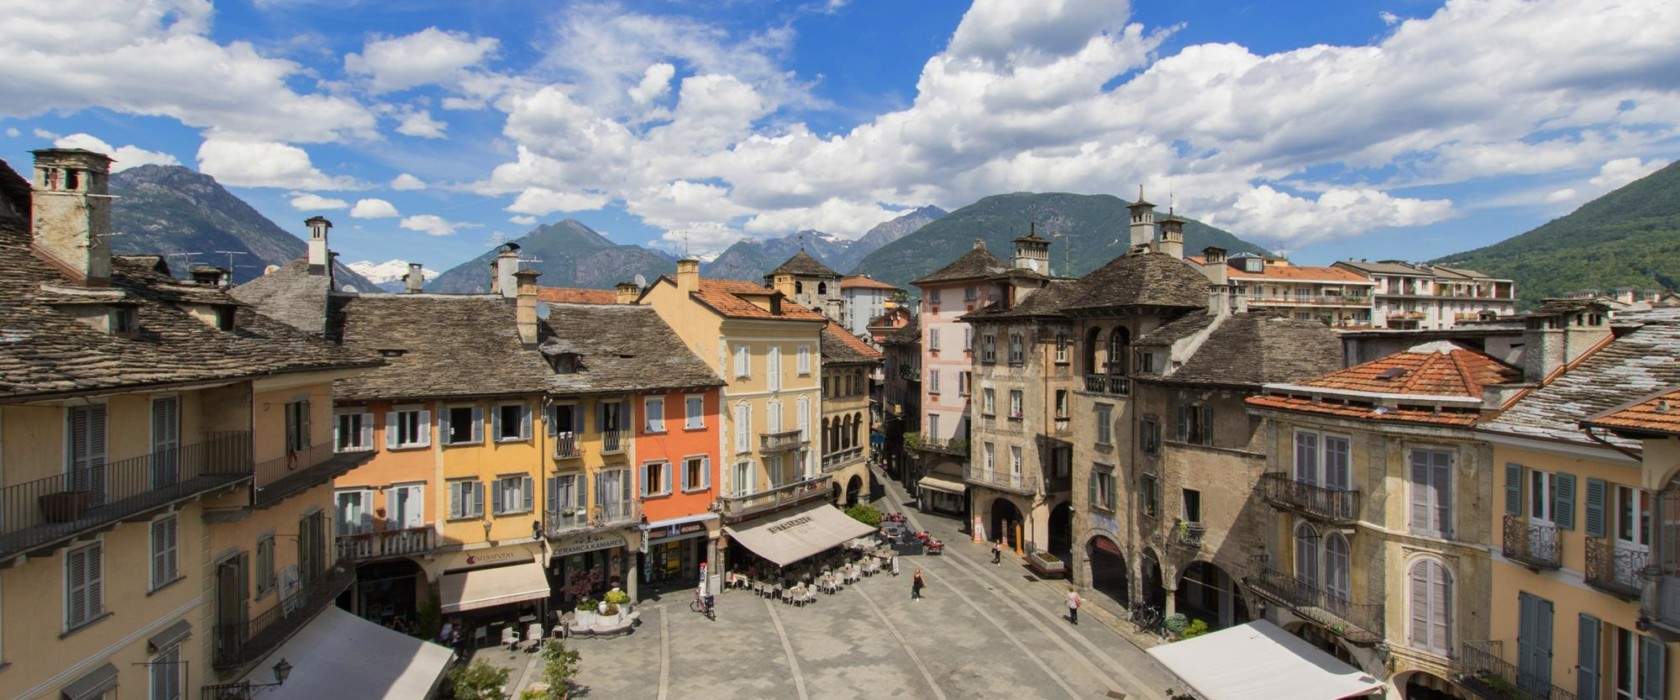 Val d'Ossola, qué ver: 10 lugares que no hay que perderse